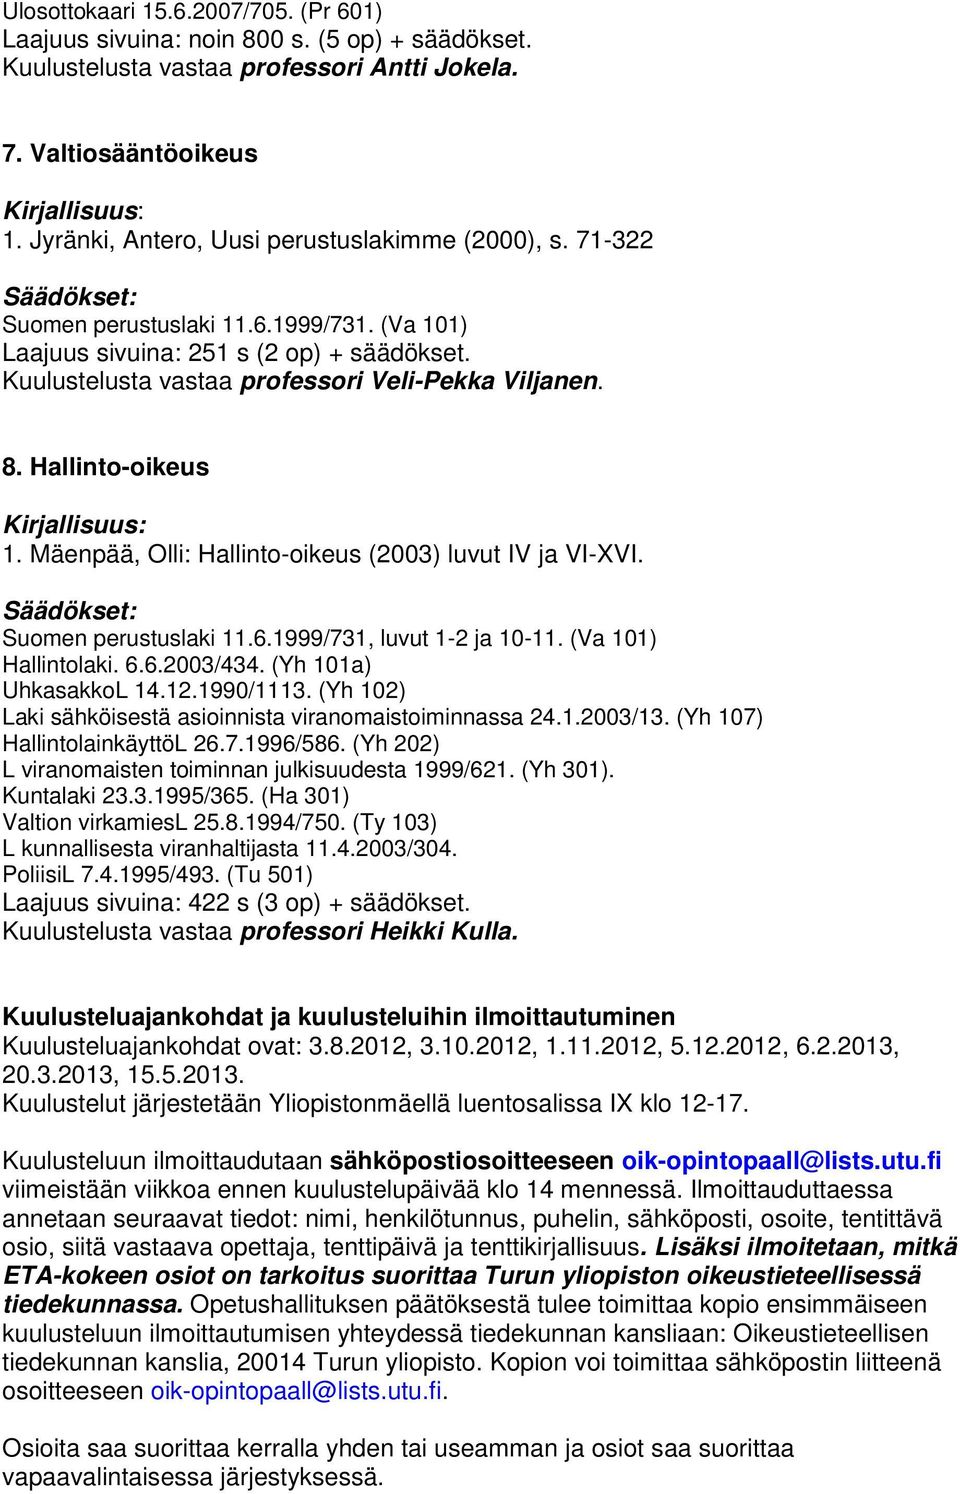 Hallinto-oikeus 1. Mäenpää, Olli: Hallinto-oikeus (2003) luvut IV ja VI-XVI. Suomen perustuslaki 11.6.1999/731, luvut 1-2 ja 10-11. (Va 101) Hallintolaki. 6.6.2003/434. (Yh 101a) UhkasakkoL 14.12.